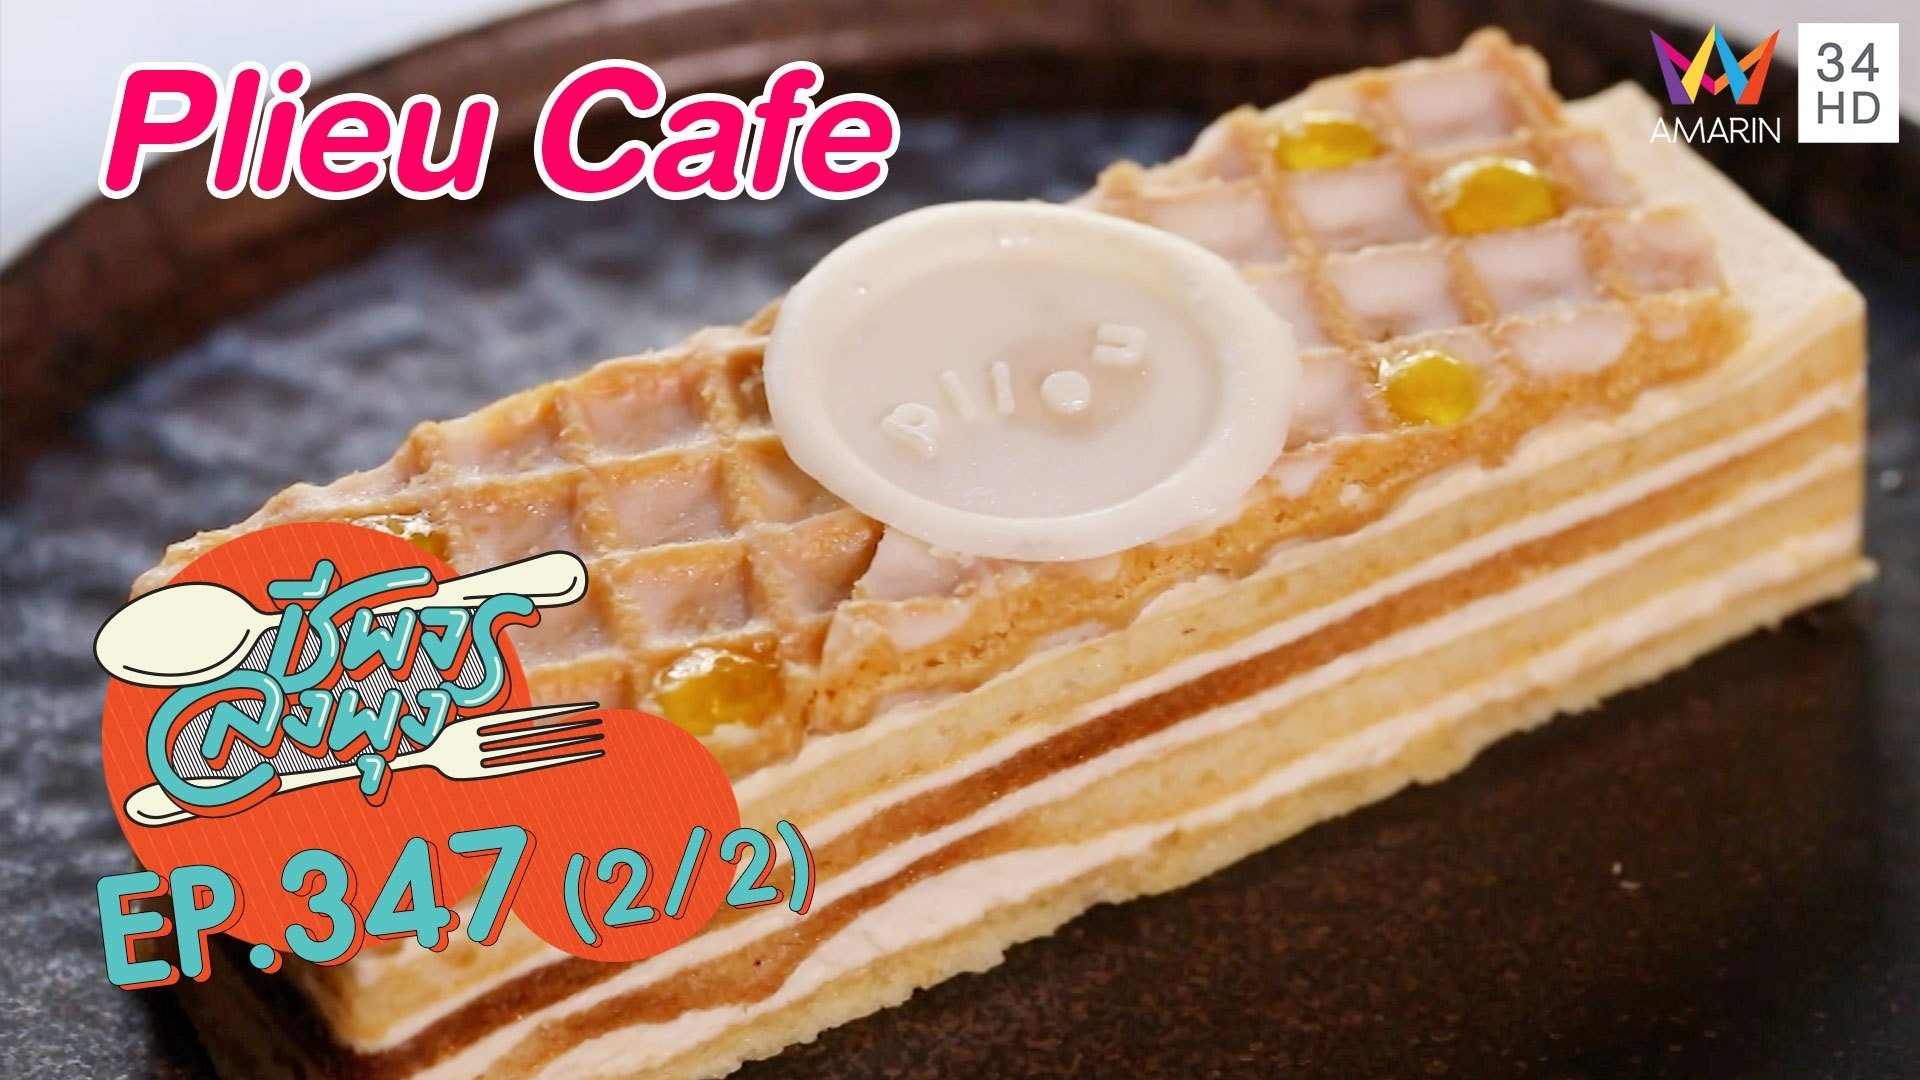 คาเฟ่คาวหวานในตำนาน @ร้านPlieu Cafe | ชีพจรลงพุง | 4 ธ.ค. 64 (2/2) | AMARIN TVHD34